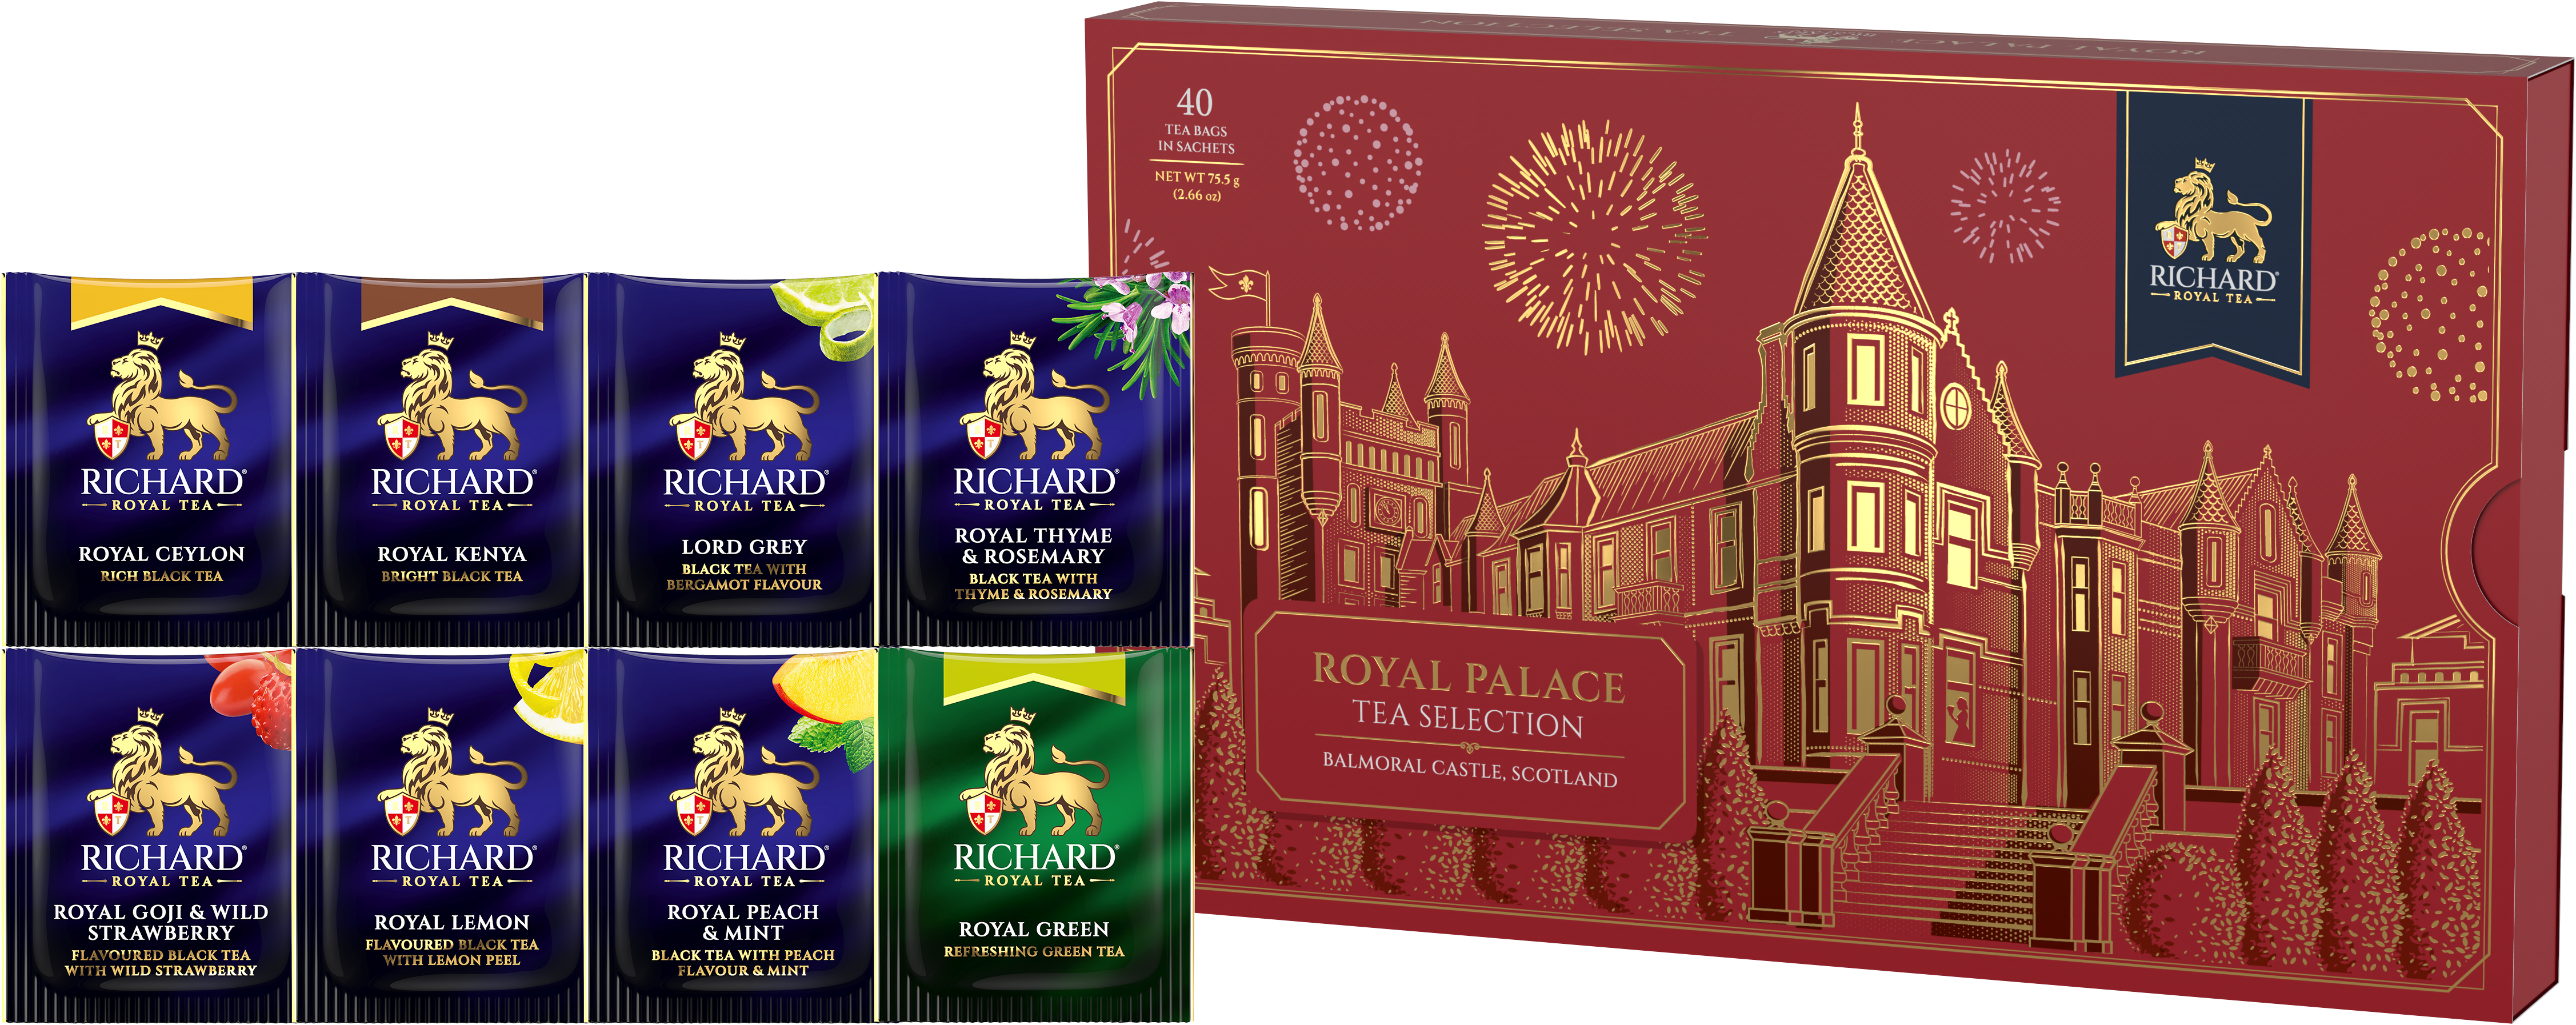 Richard Royal Palota filteres tea-válogatás, 75,5gr RED - Balmoral Richard Tea